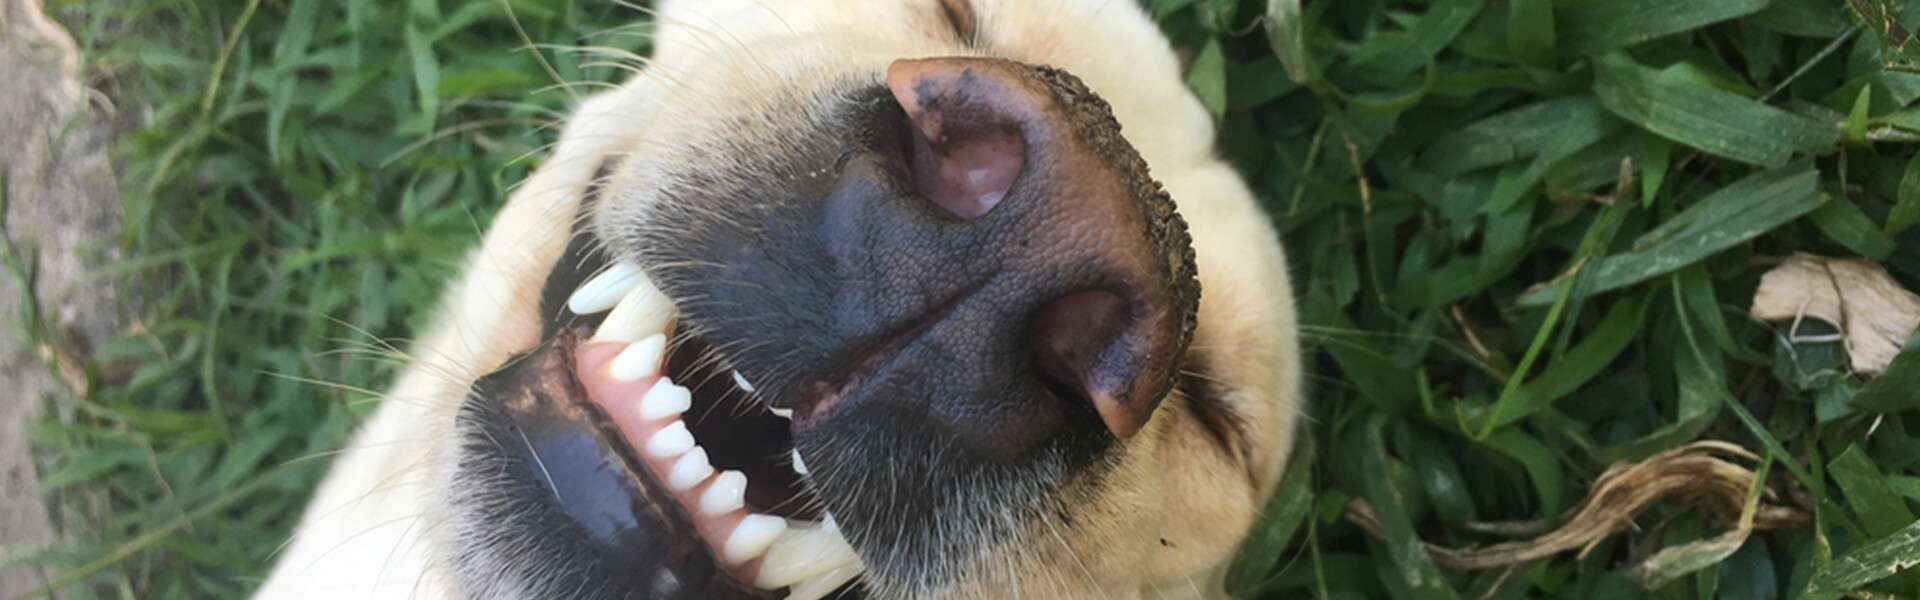 Udfordring Observatory sfærisk Tandpleje hos hunde - sådan forebygger du sygdomme med en god tandhygiejne